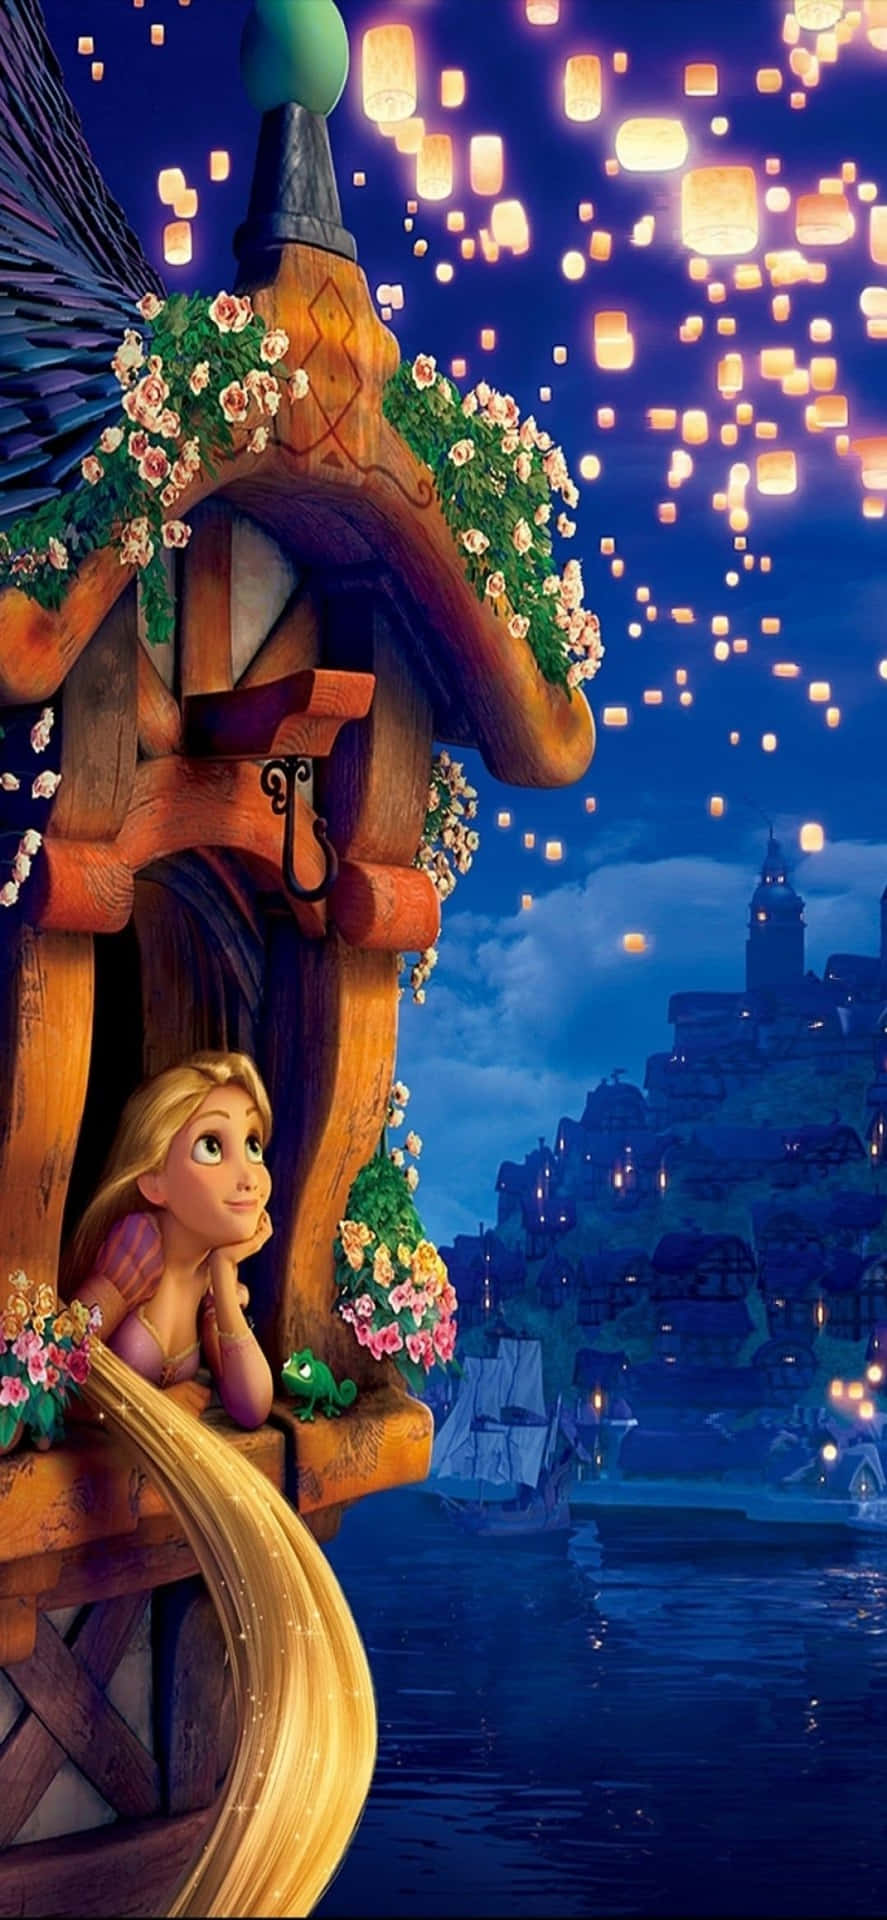 Fondode Pantalla De Disney Para Iphone X De Enredados Con Rapunzel.